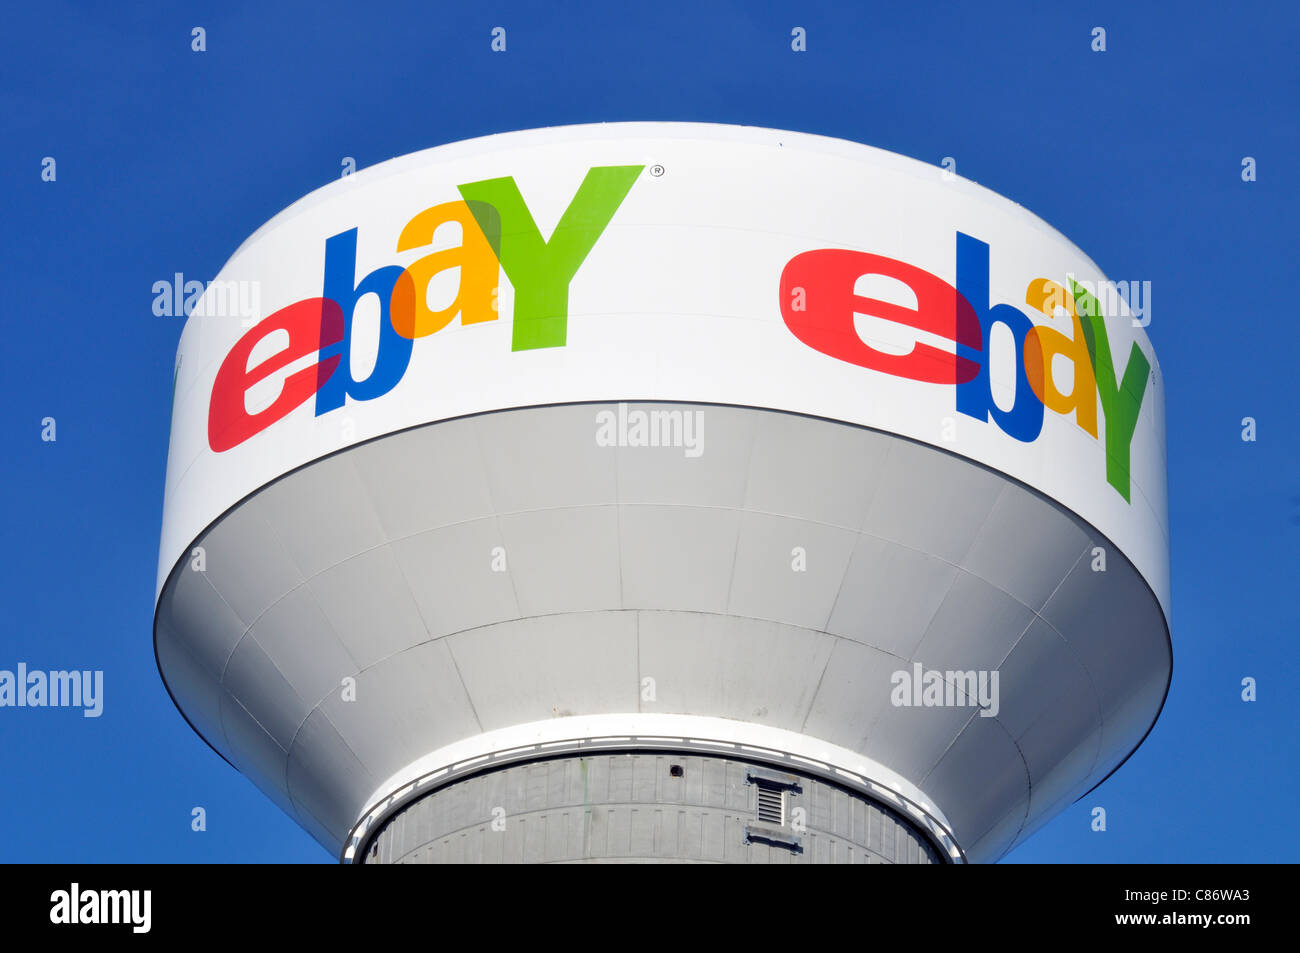 eBay-Logo auf dem Wasserturm auf dem klaren, blauen Himmel am Tag. USA Stockfoto